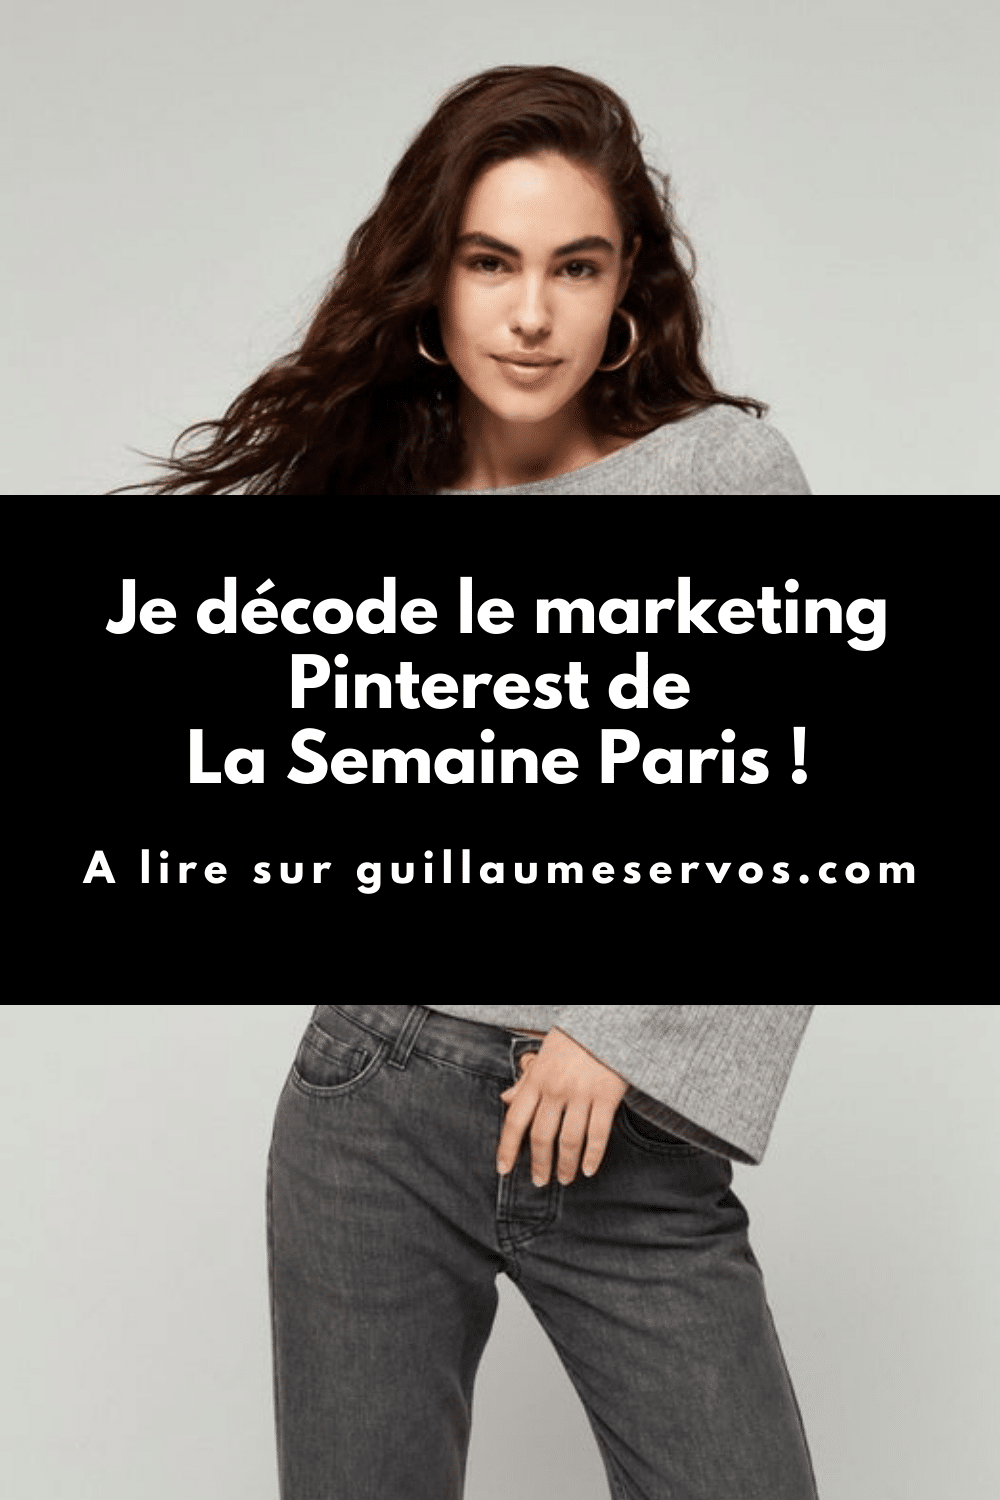 Comment La Semaine Paris utilise Pinterest pour son business ? Je décode le marketing Pinterest de la marque de mode de Gabrielle Caunesil.